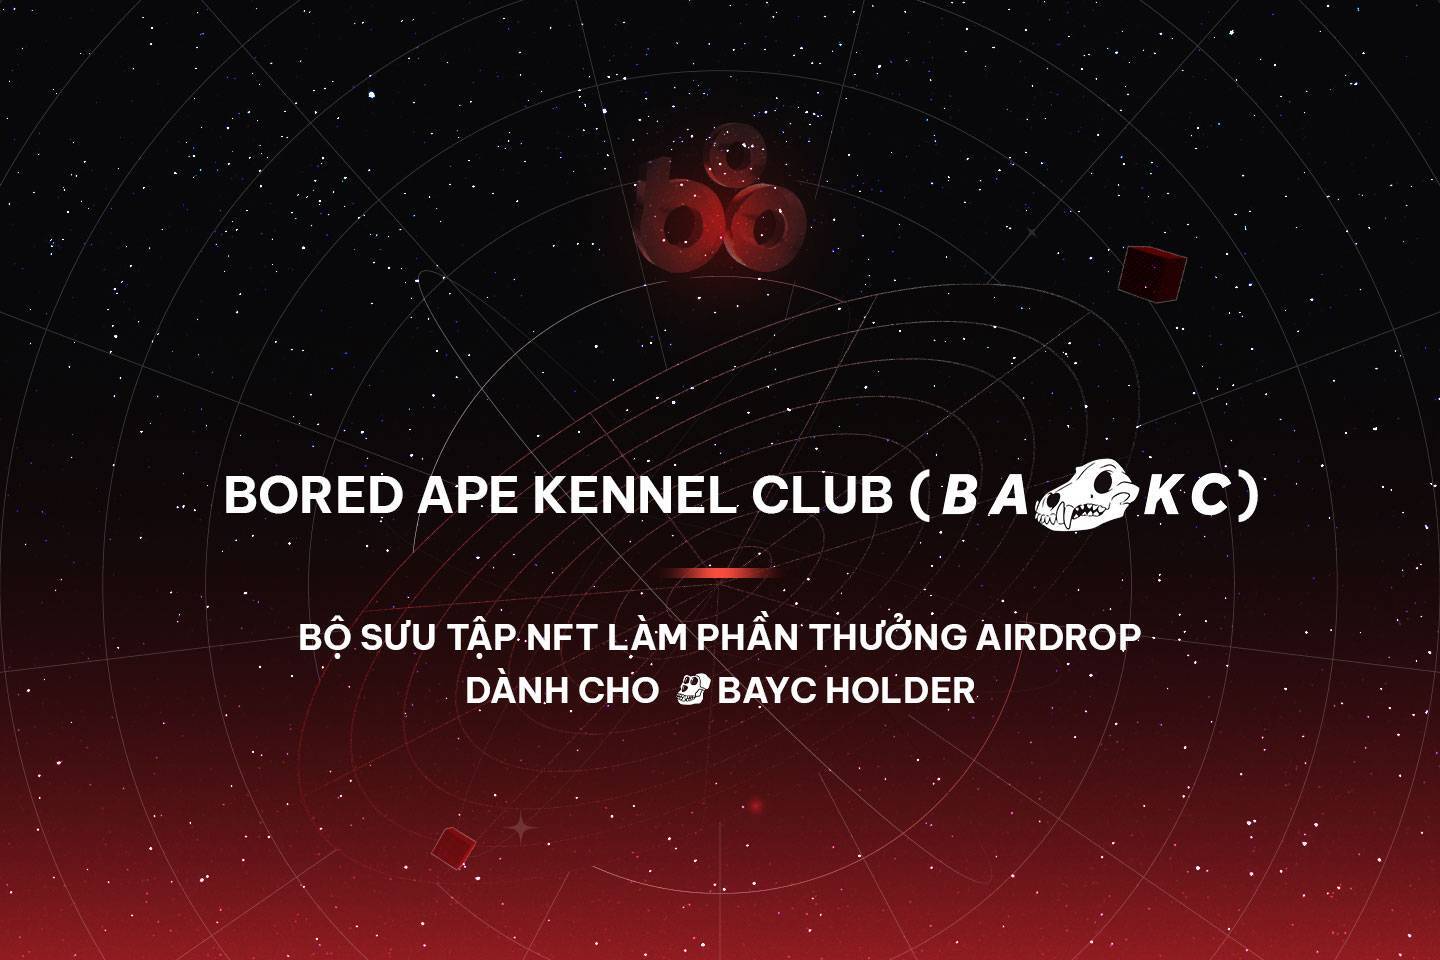 Bored Ape Kennel Club bakc - Bộ Sưu Tập Nft Làm Phần Thưởng Airdrop Dành Cho Bayc Holder